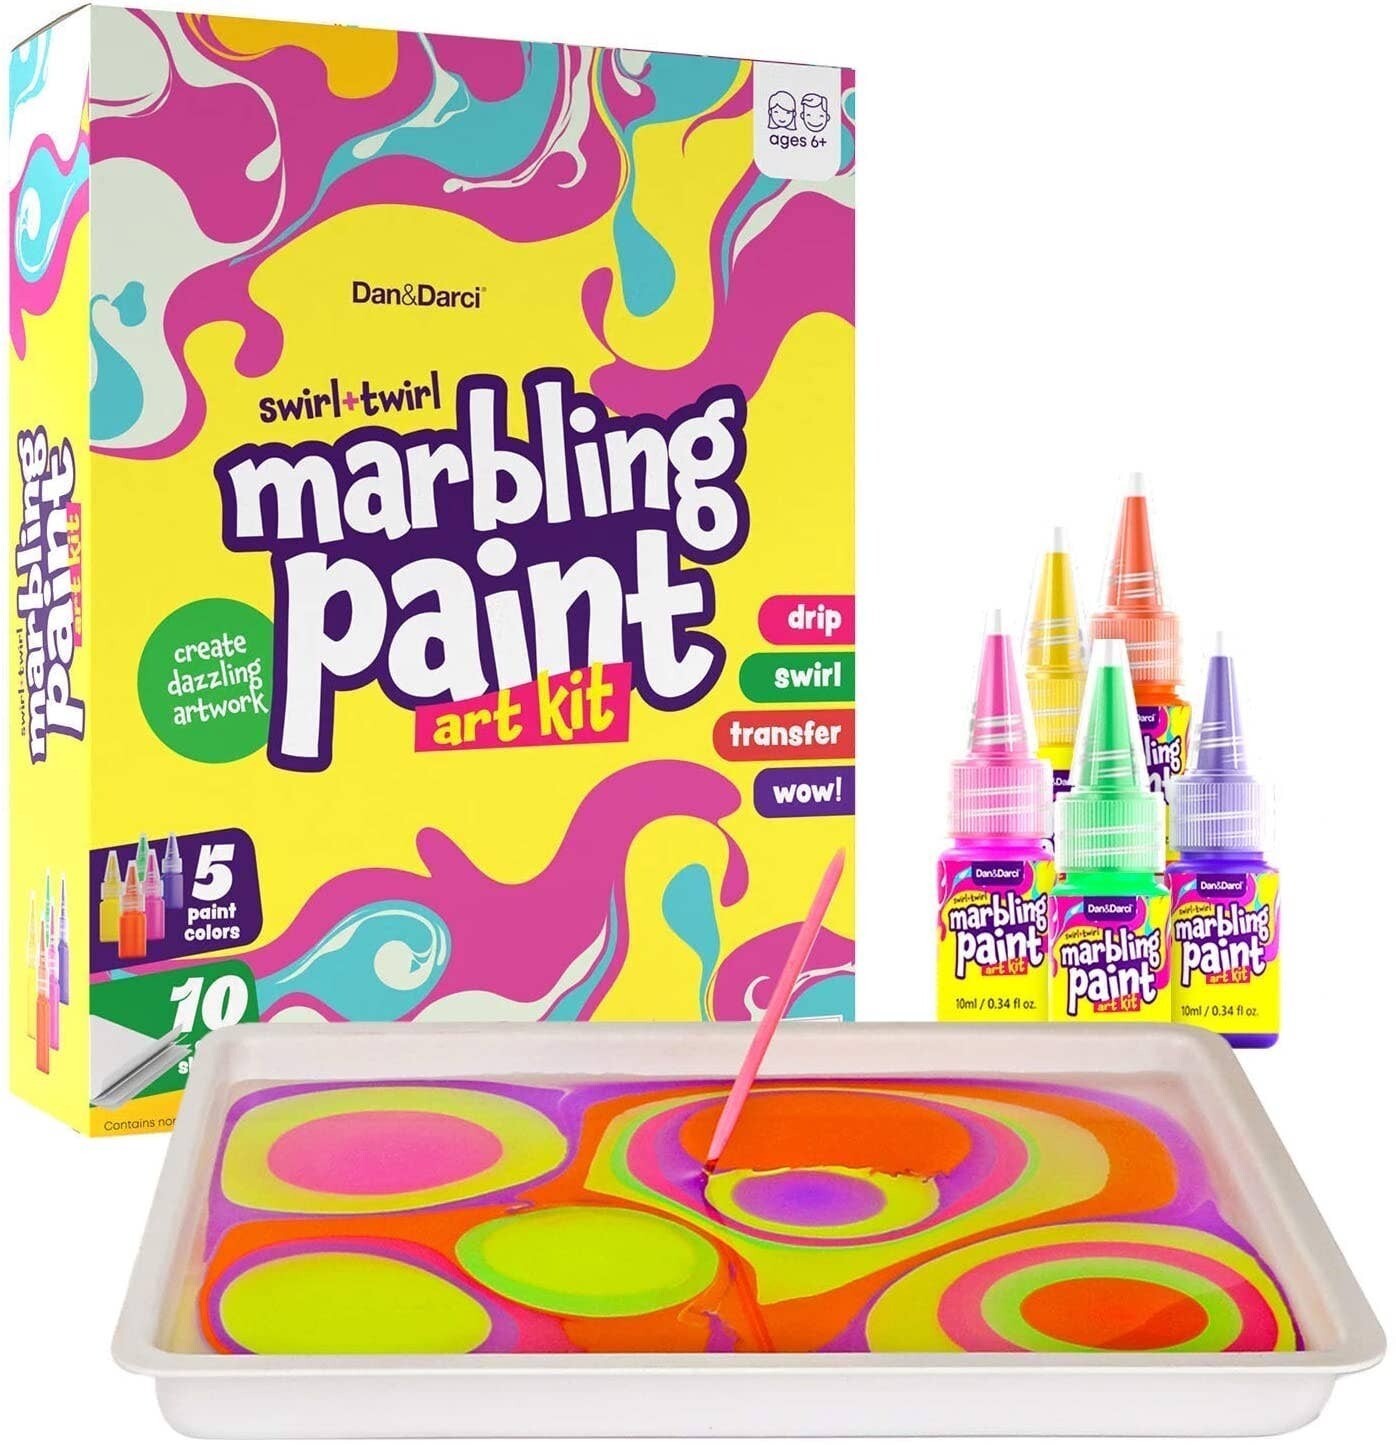 Dan&Darci - Dan&Darci Marbling Paint Art Kit for Kids